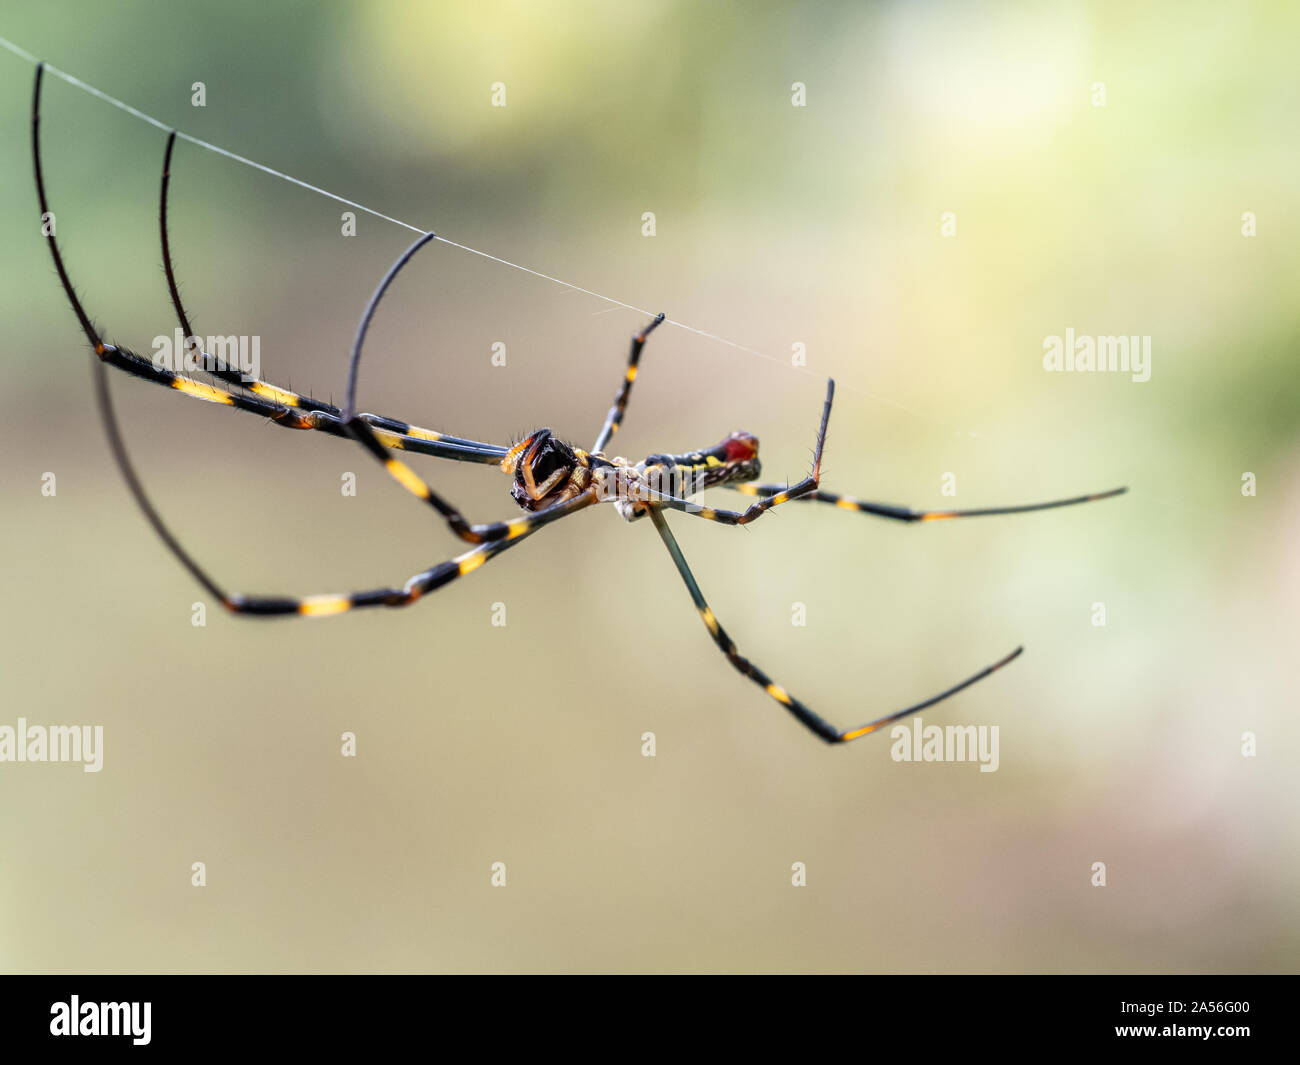 Une Nephila clavata, un type d'orb weaver spider originaire du Japon où elle est appelée-joro joro gumo ou spider, attend dans son site web de proies. Banque D'Images